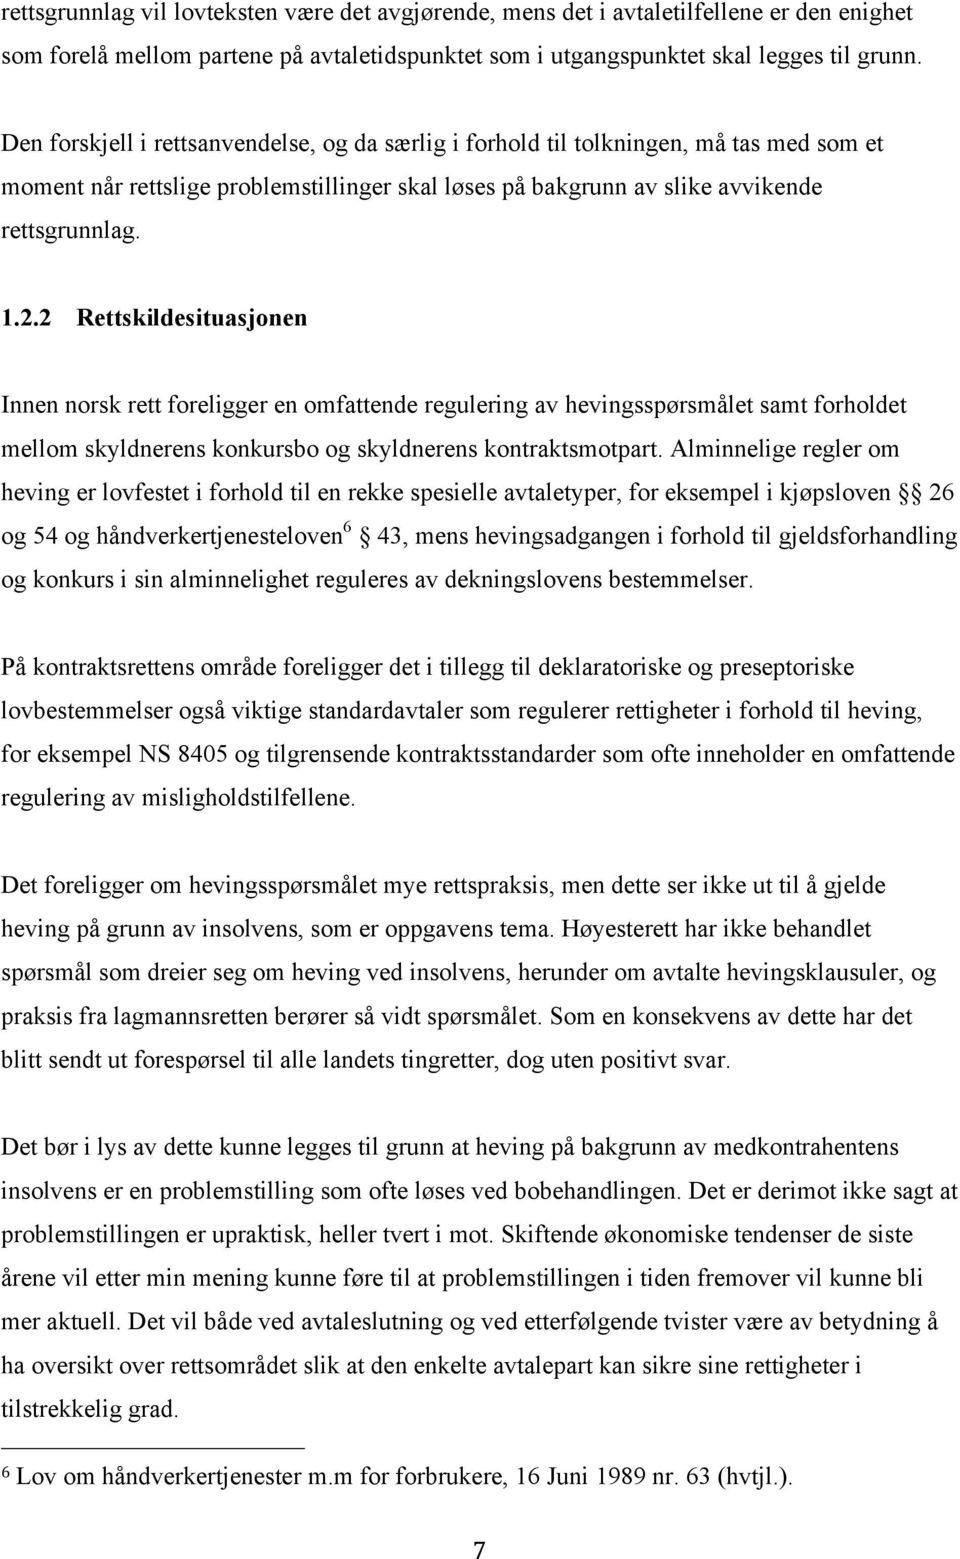 2 Rettskildesituasjonen Innen norsk rett foreligger en omfattende regulering av hevingsspørsmålet samt forholdet mellom skyldnerens konkursbo og skyldnerens kontraktsmotpart.